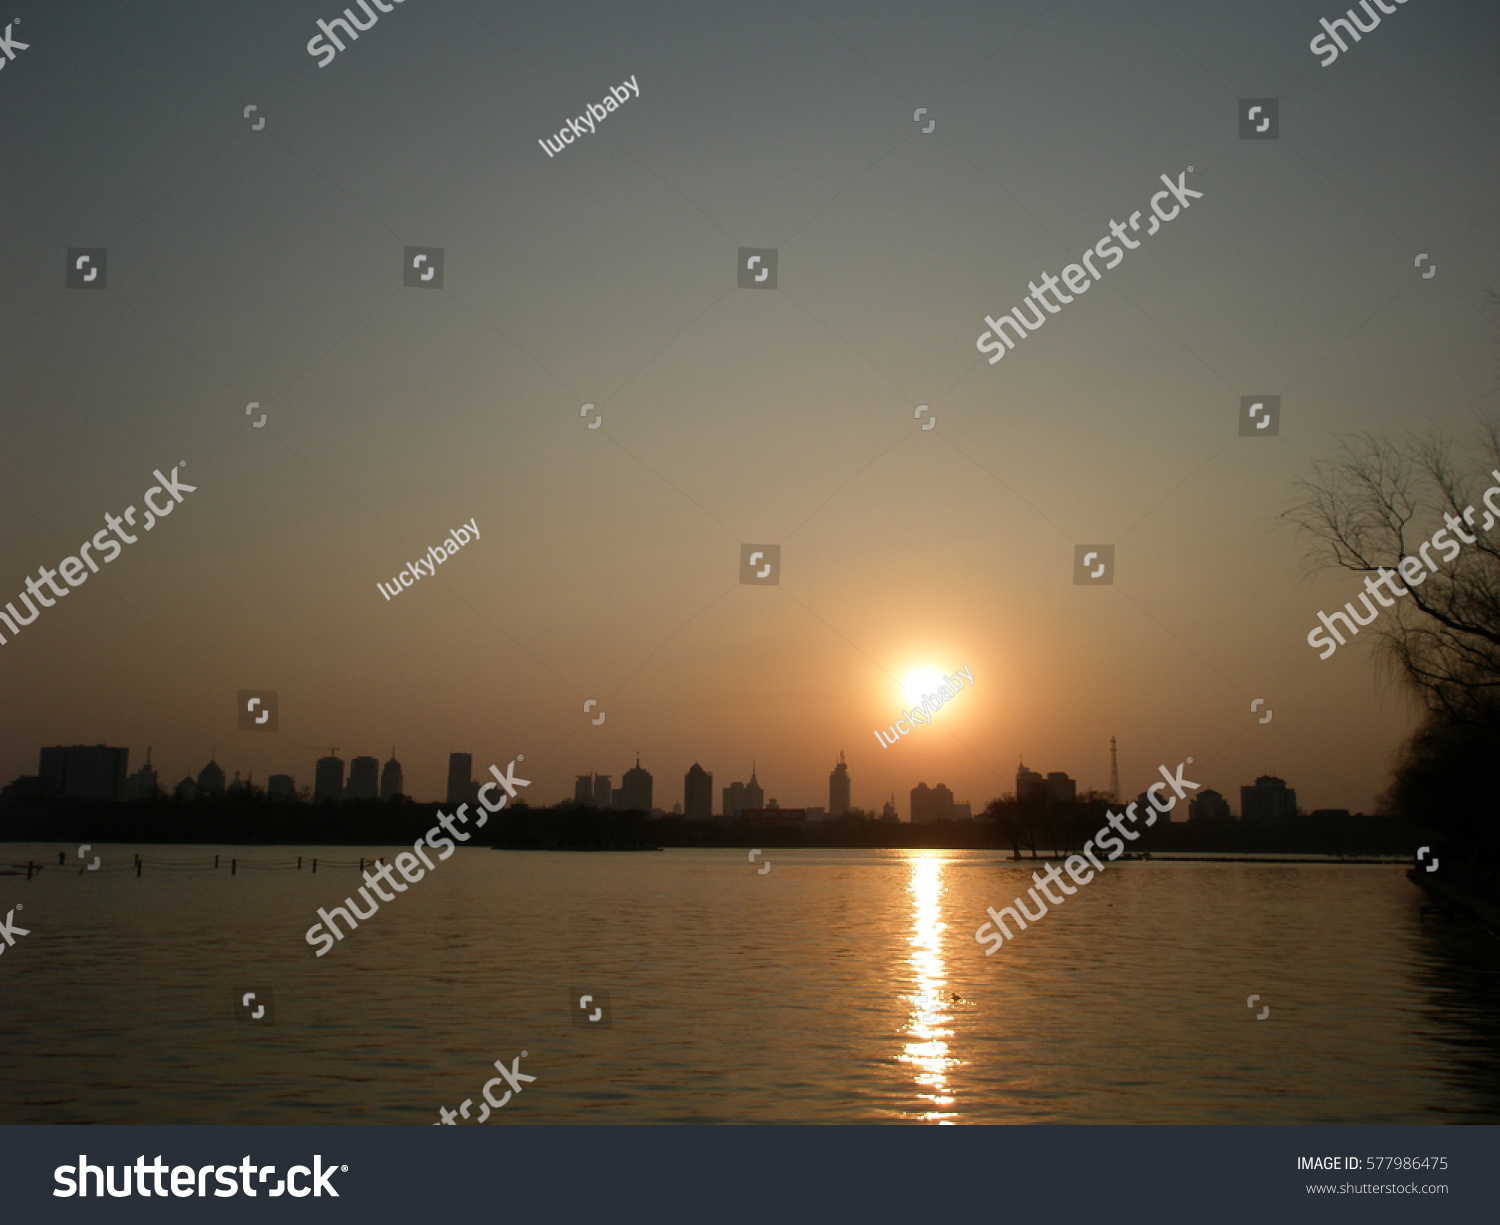 Warm winter sunset over lake at Jinan, Shandong province, China #577986475